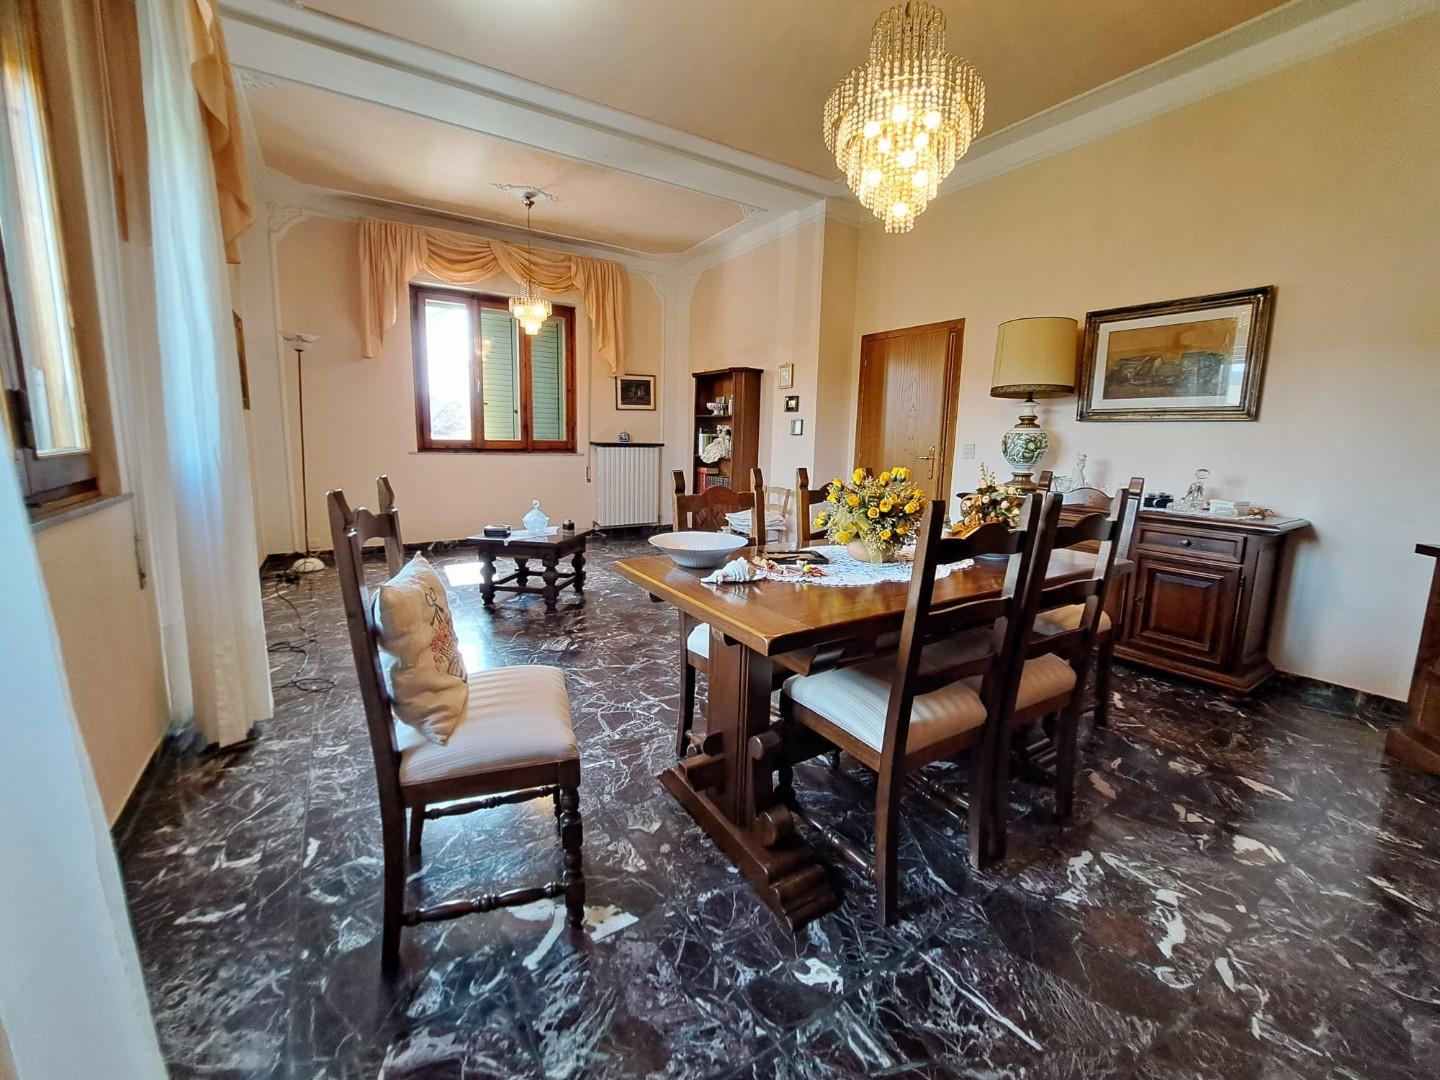 Appartamento in vendita a Lamporecchio, 5 locali, prezzo € 190.000 | CambioCasa.it